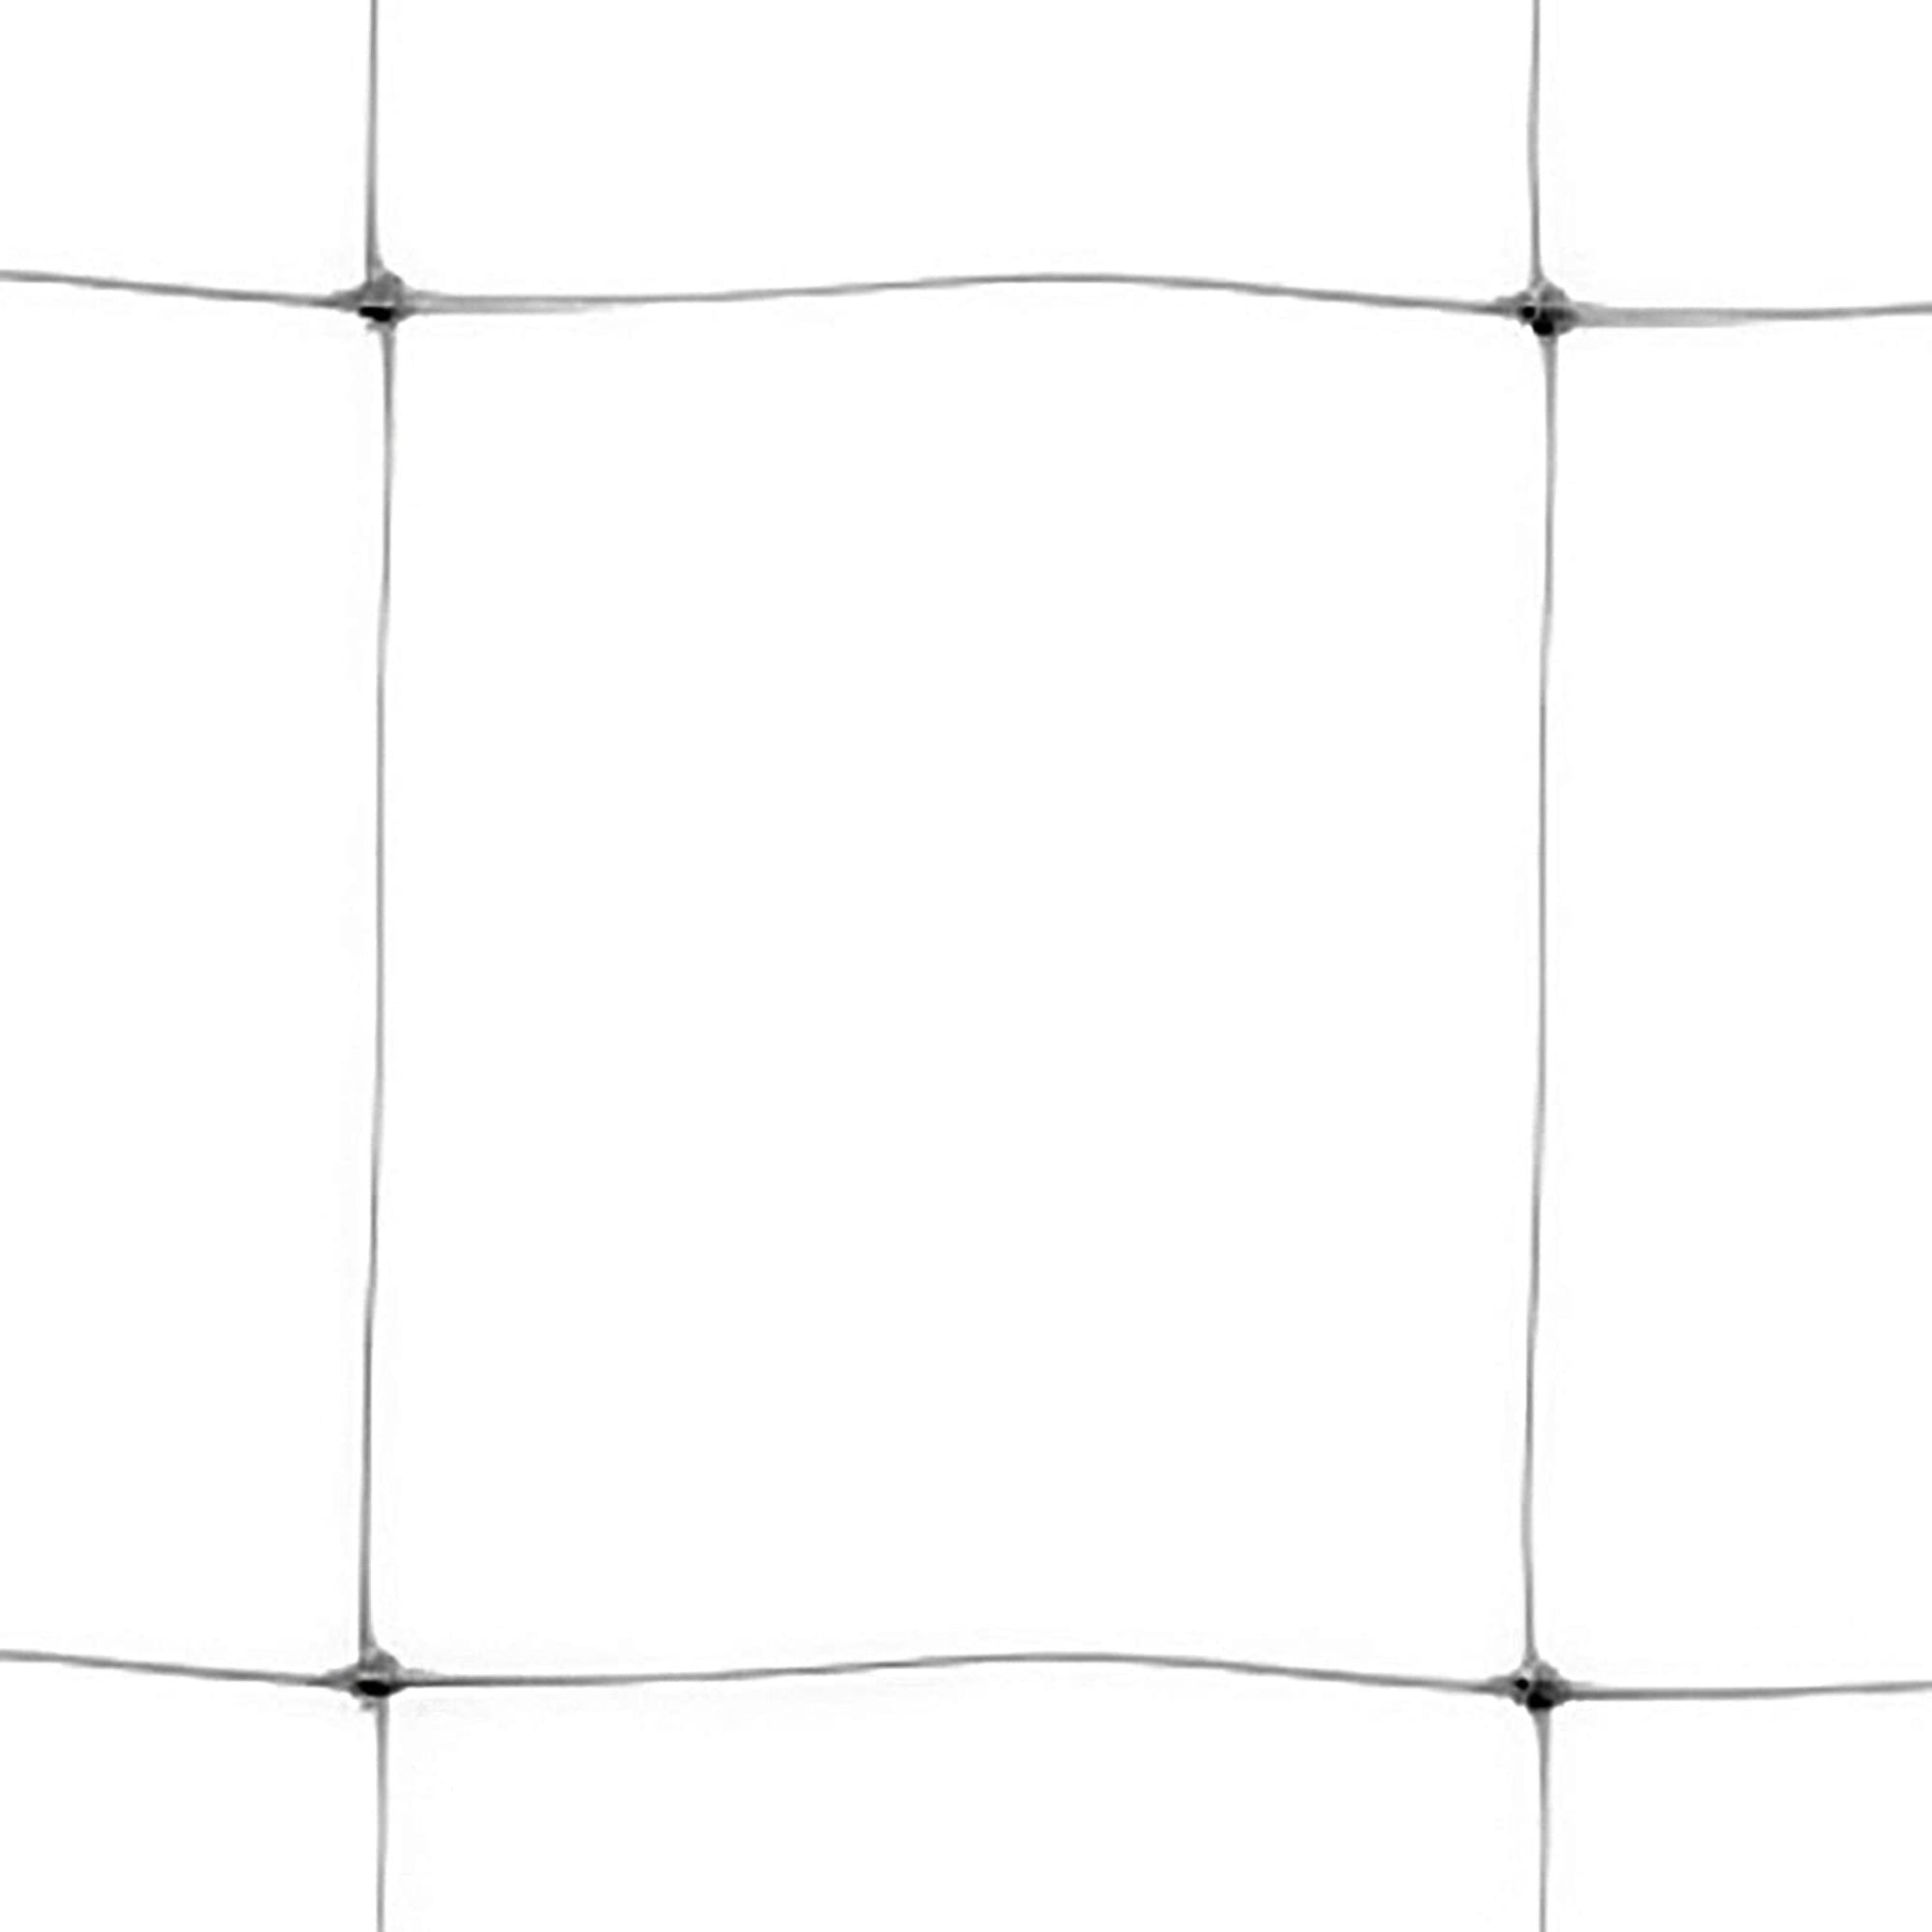 Tenax Hortonova Trellis Plant Net/Support, White 6.5' x 100'